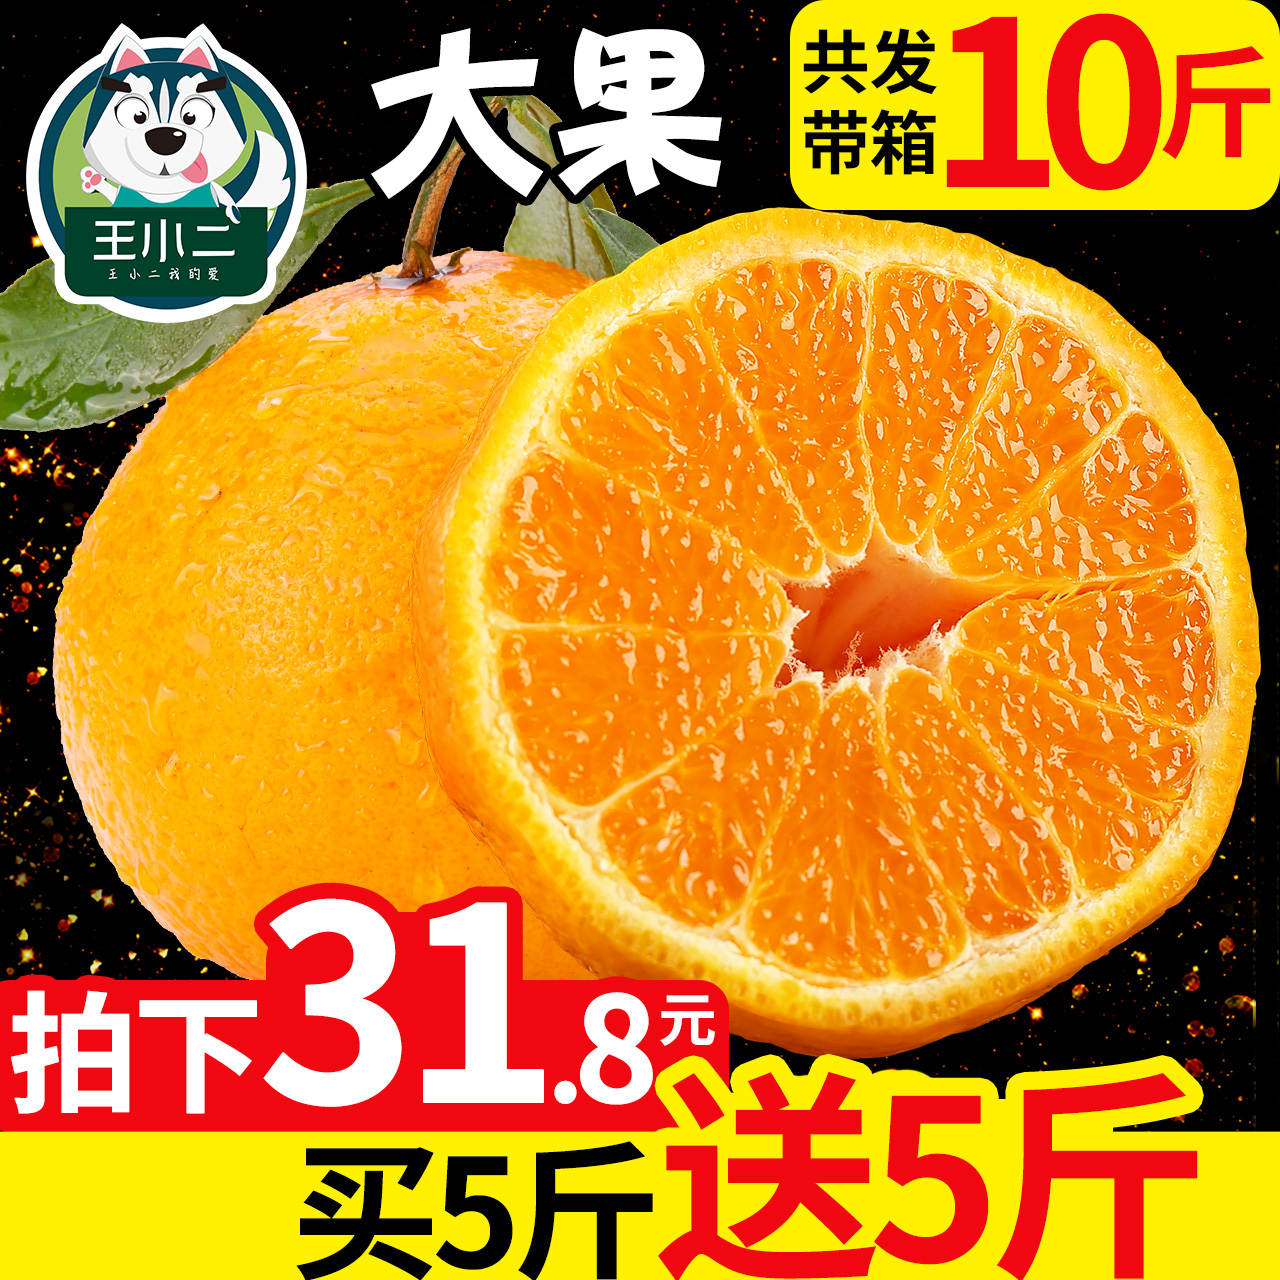 【买一送一】青见丑橘水果新鲜丑桔子包邮沃柑橘当季橘子带箱10斤